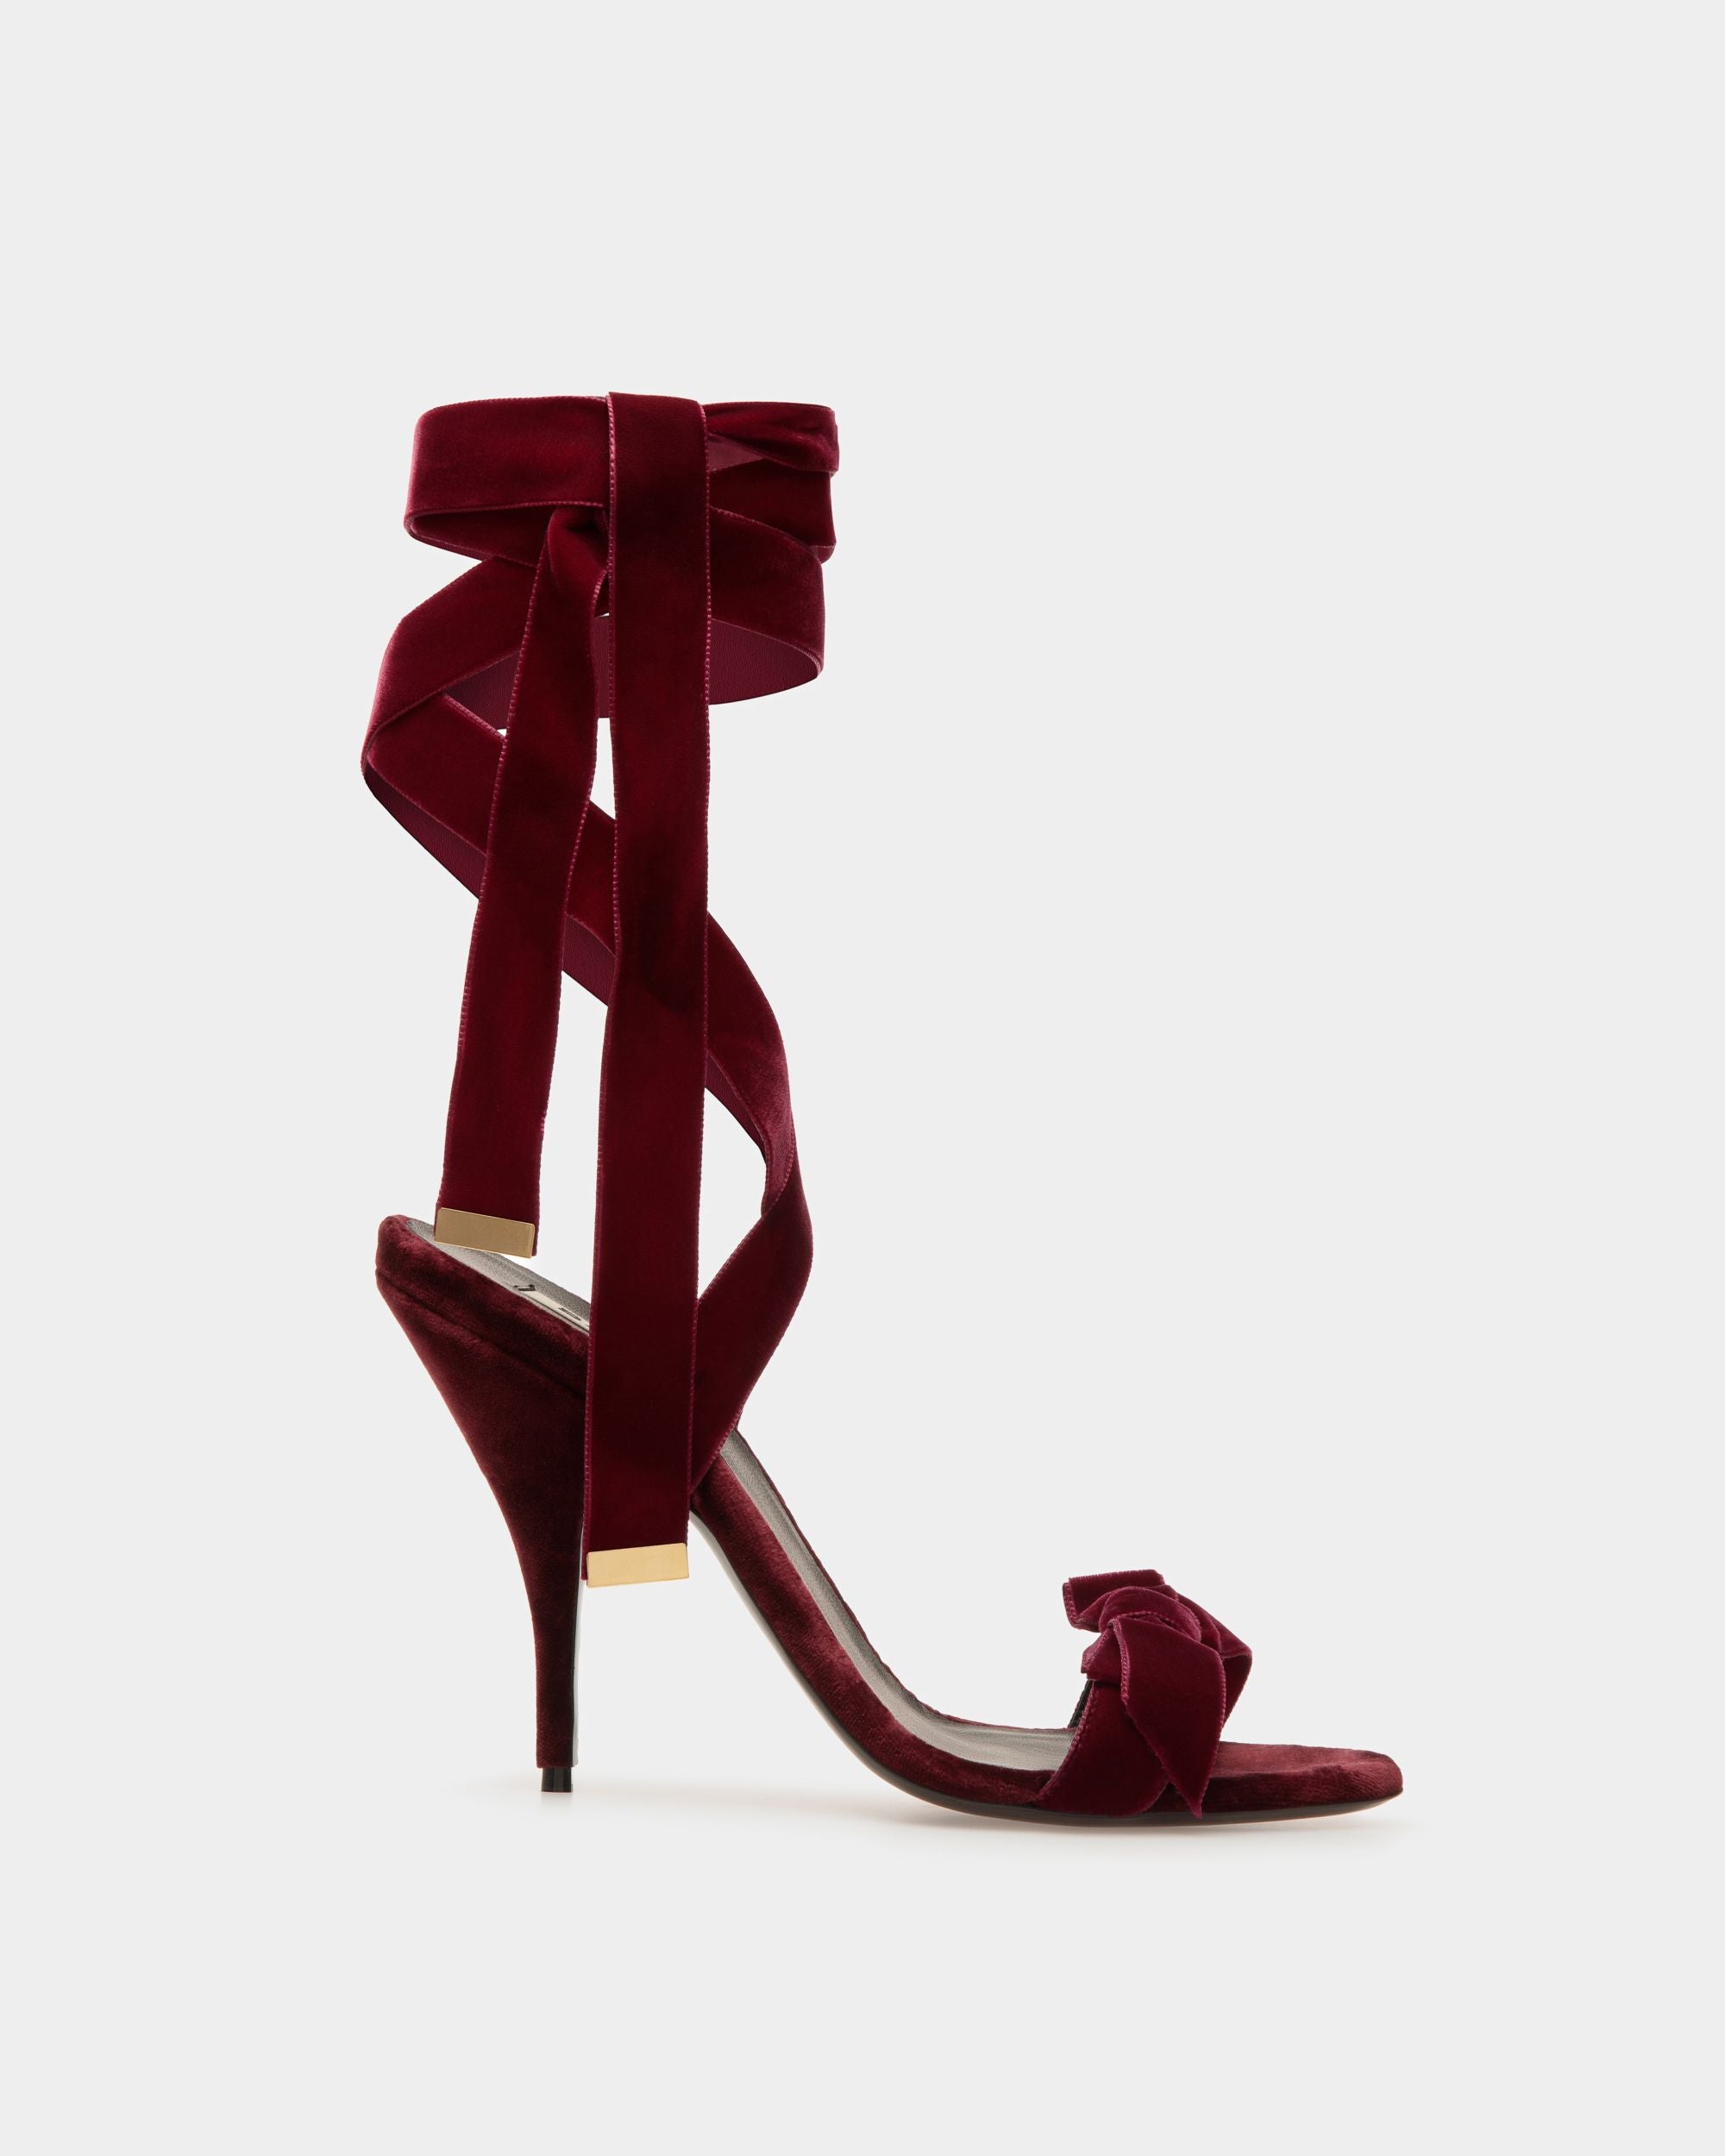 Annita | Women's Sandals | Burgundy Velvet | Bally | Still Life Side